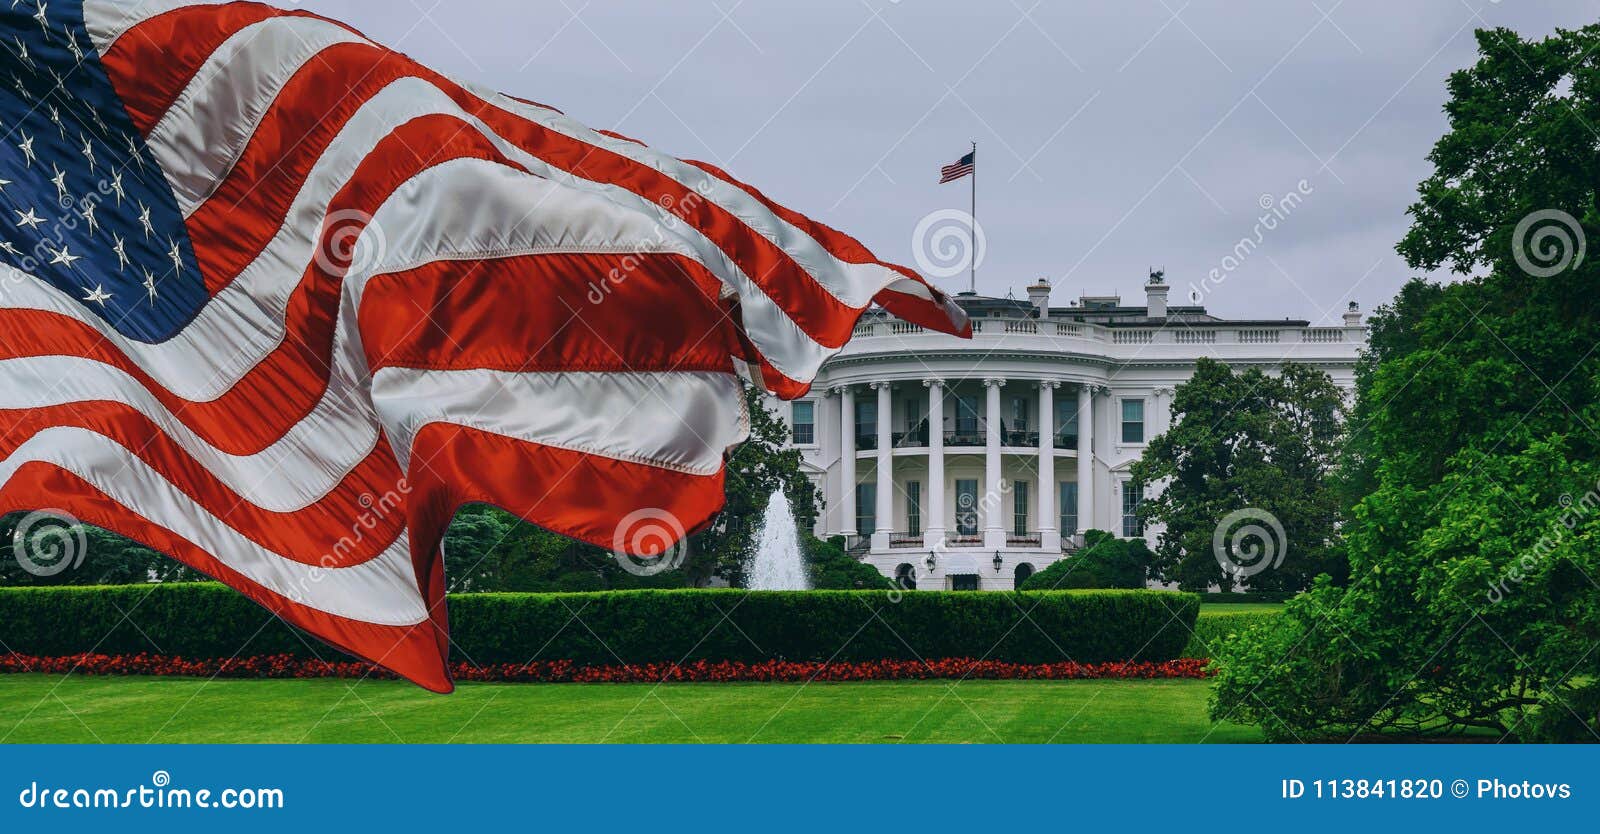 the white house - washington dc united states